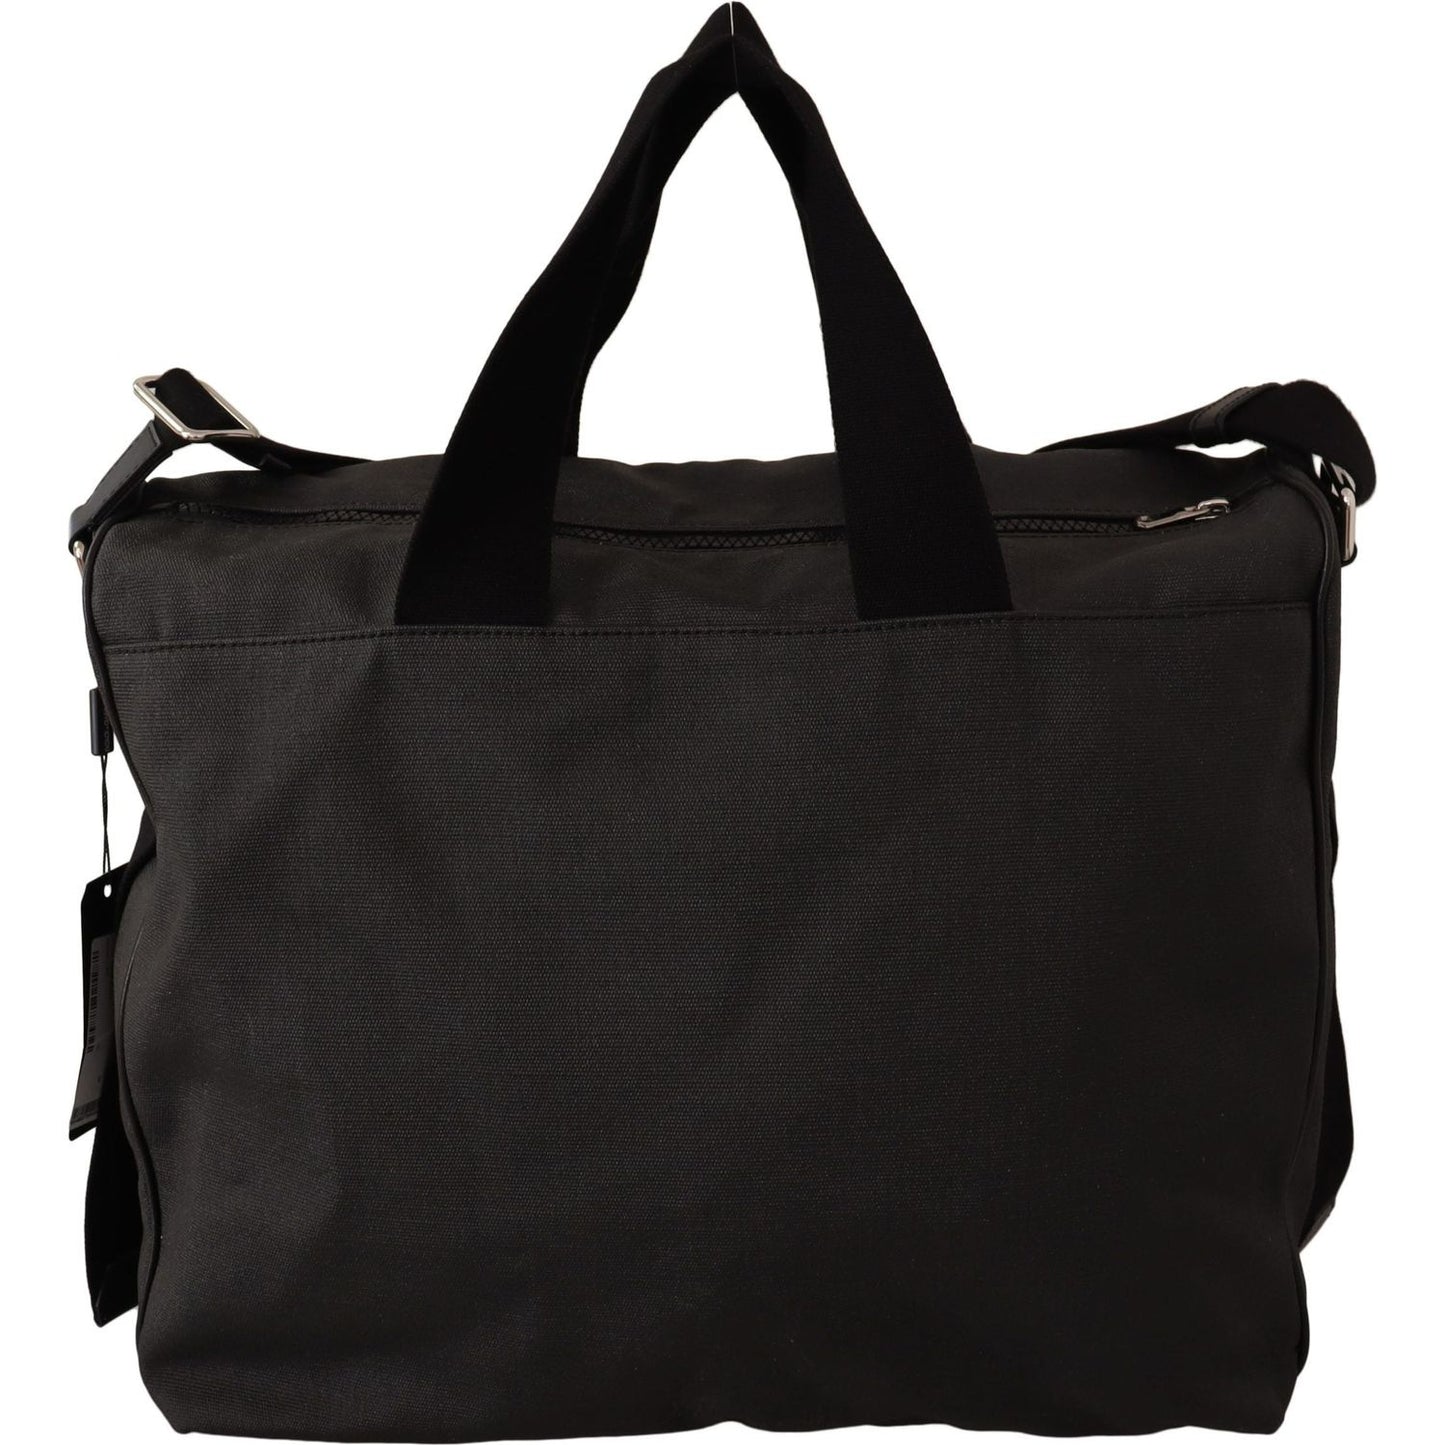 Dolce & Gabbana Elegant Men's Denim & Leather Messenger Bag WOMAN SHOULDER BAGS black-denim-leather-shoulder-strap-messenger-bag